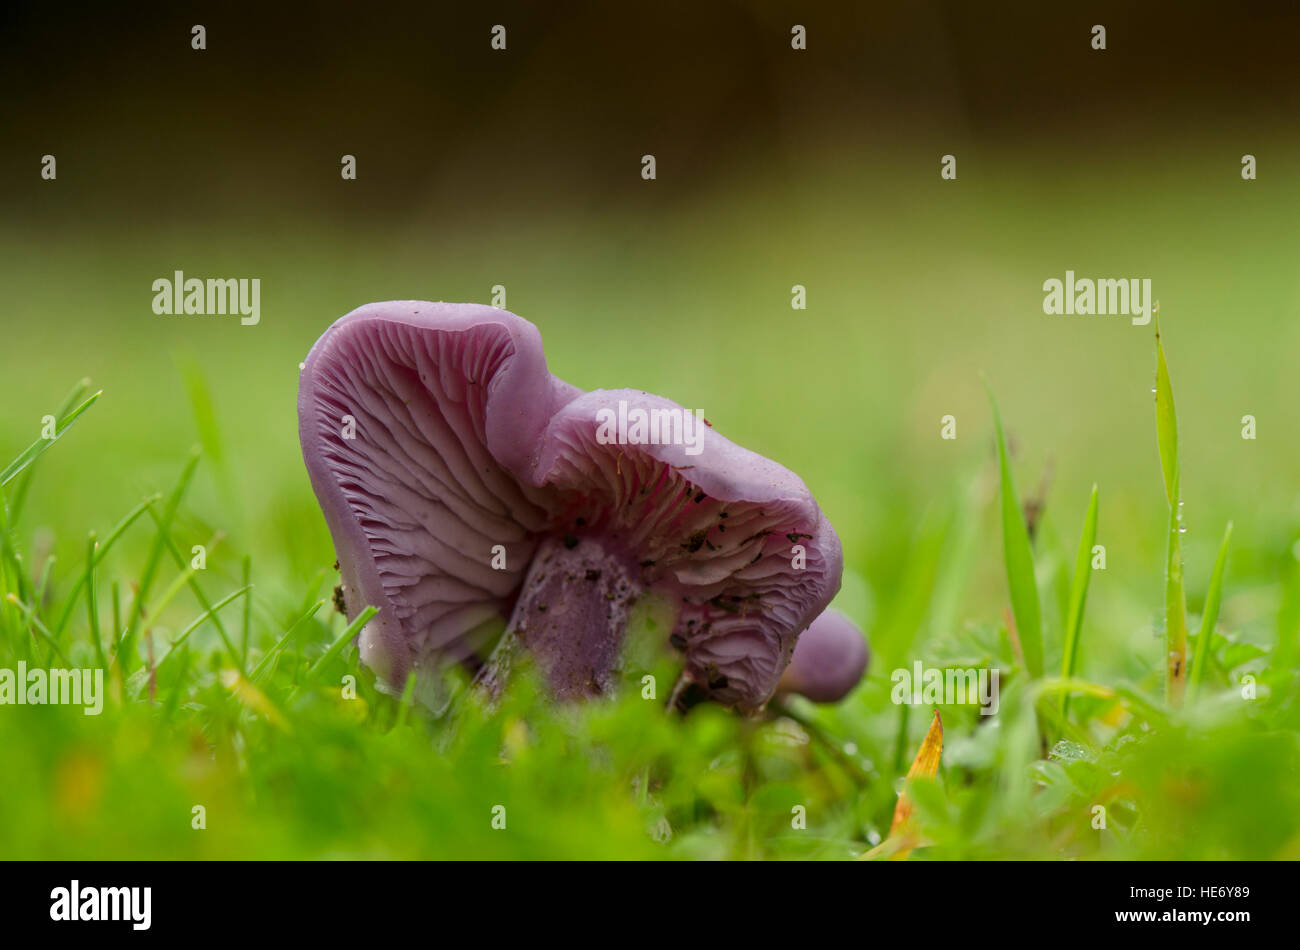 Wood blewit, edible mushroom growing in grass field. Spain. Stock Photo